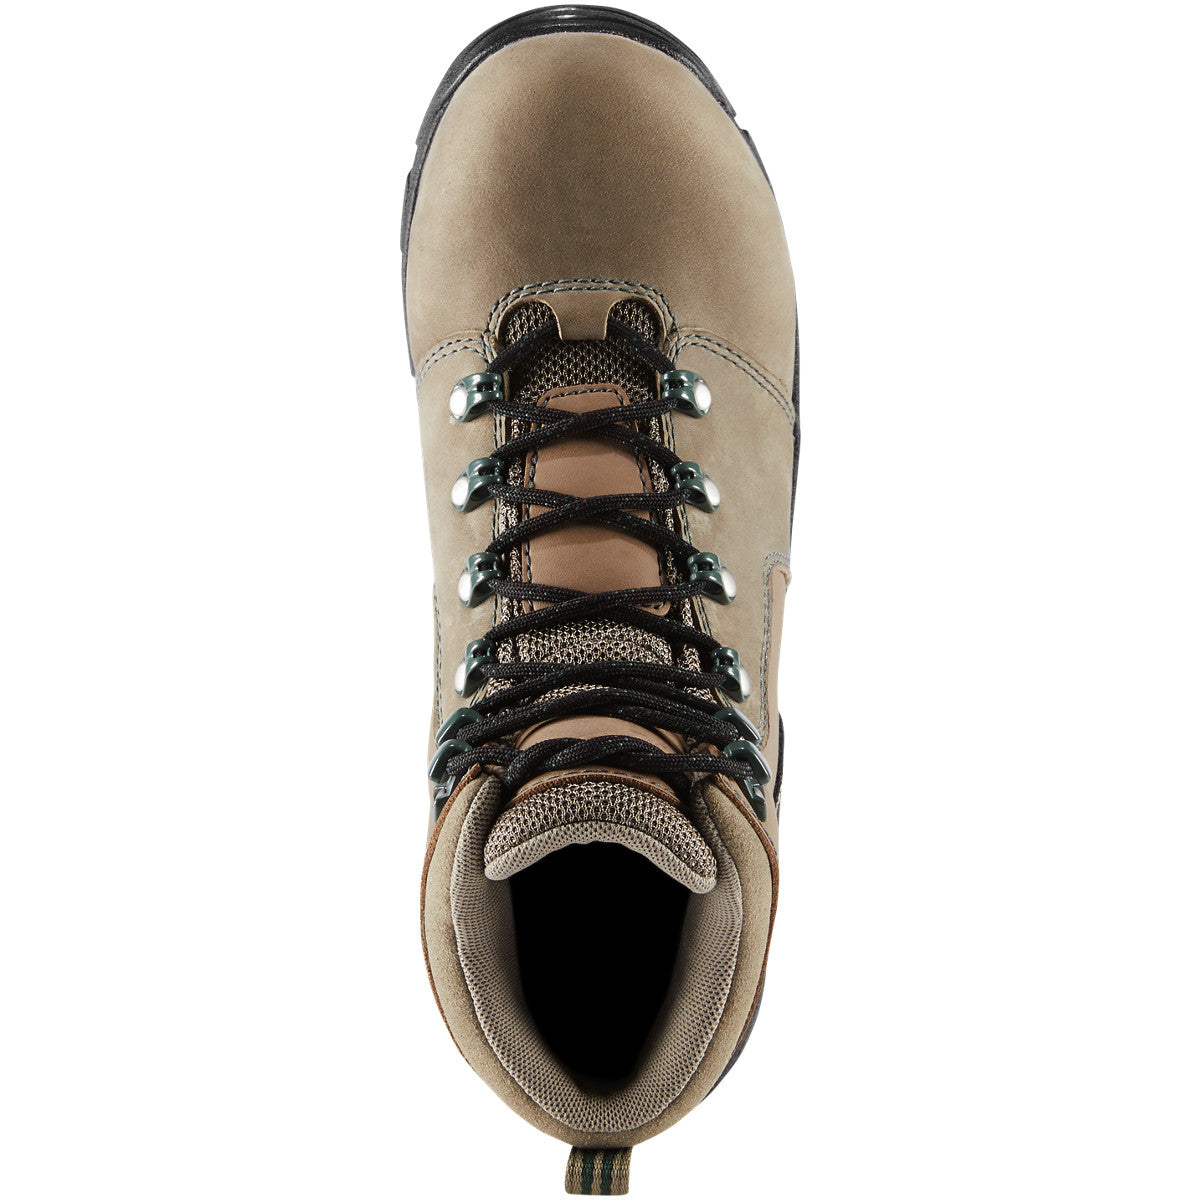 Danner Women's Vicious 4" WP Comp Toe Work Boot - Brown - 13853  - Overlook Boots